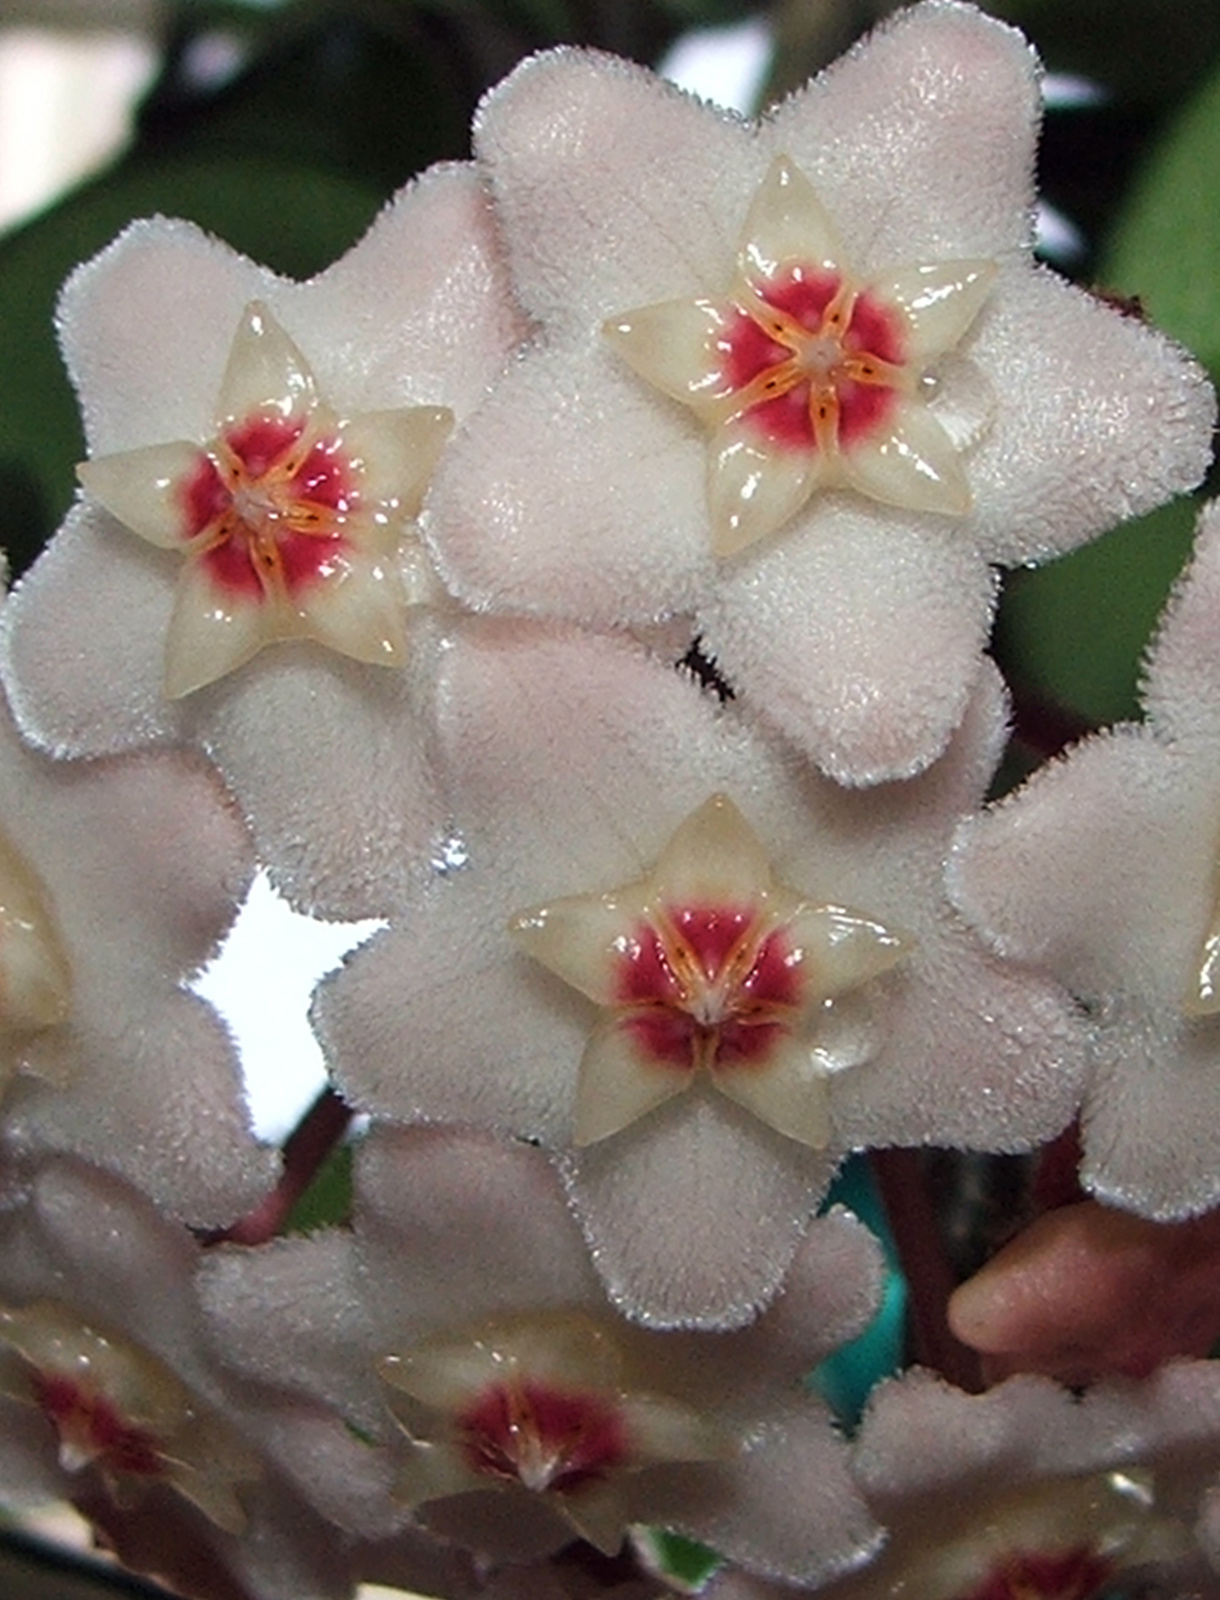 Viaszvirág (Hoya carnosa)